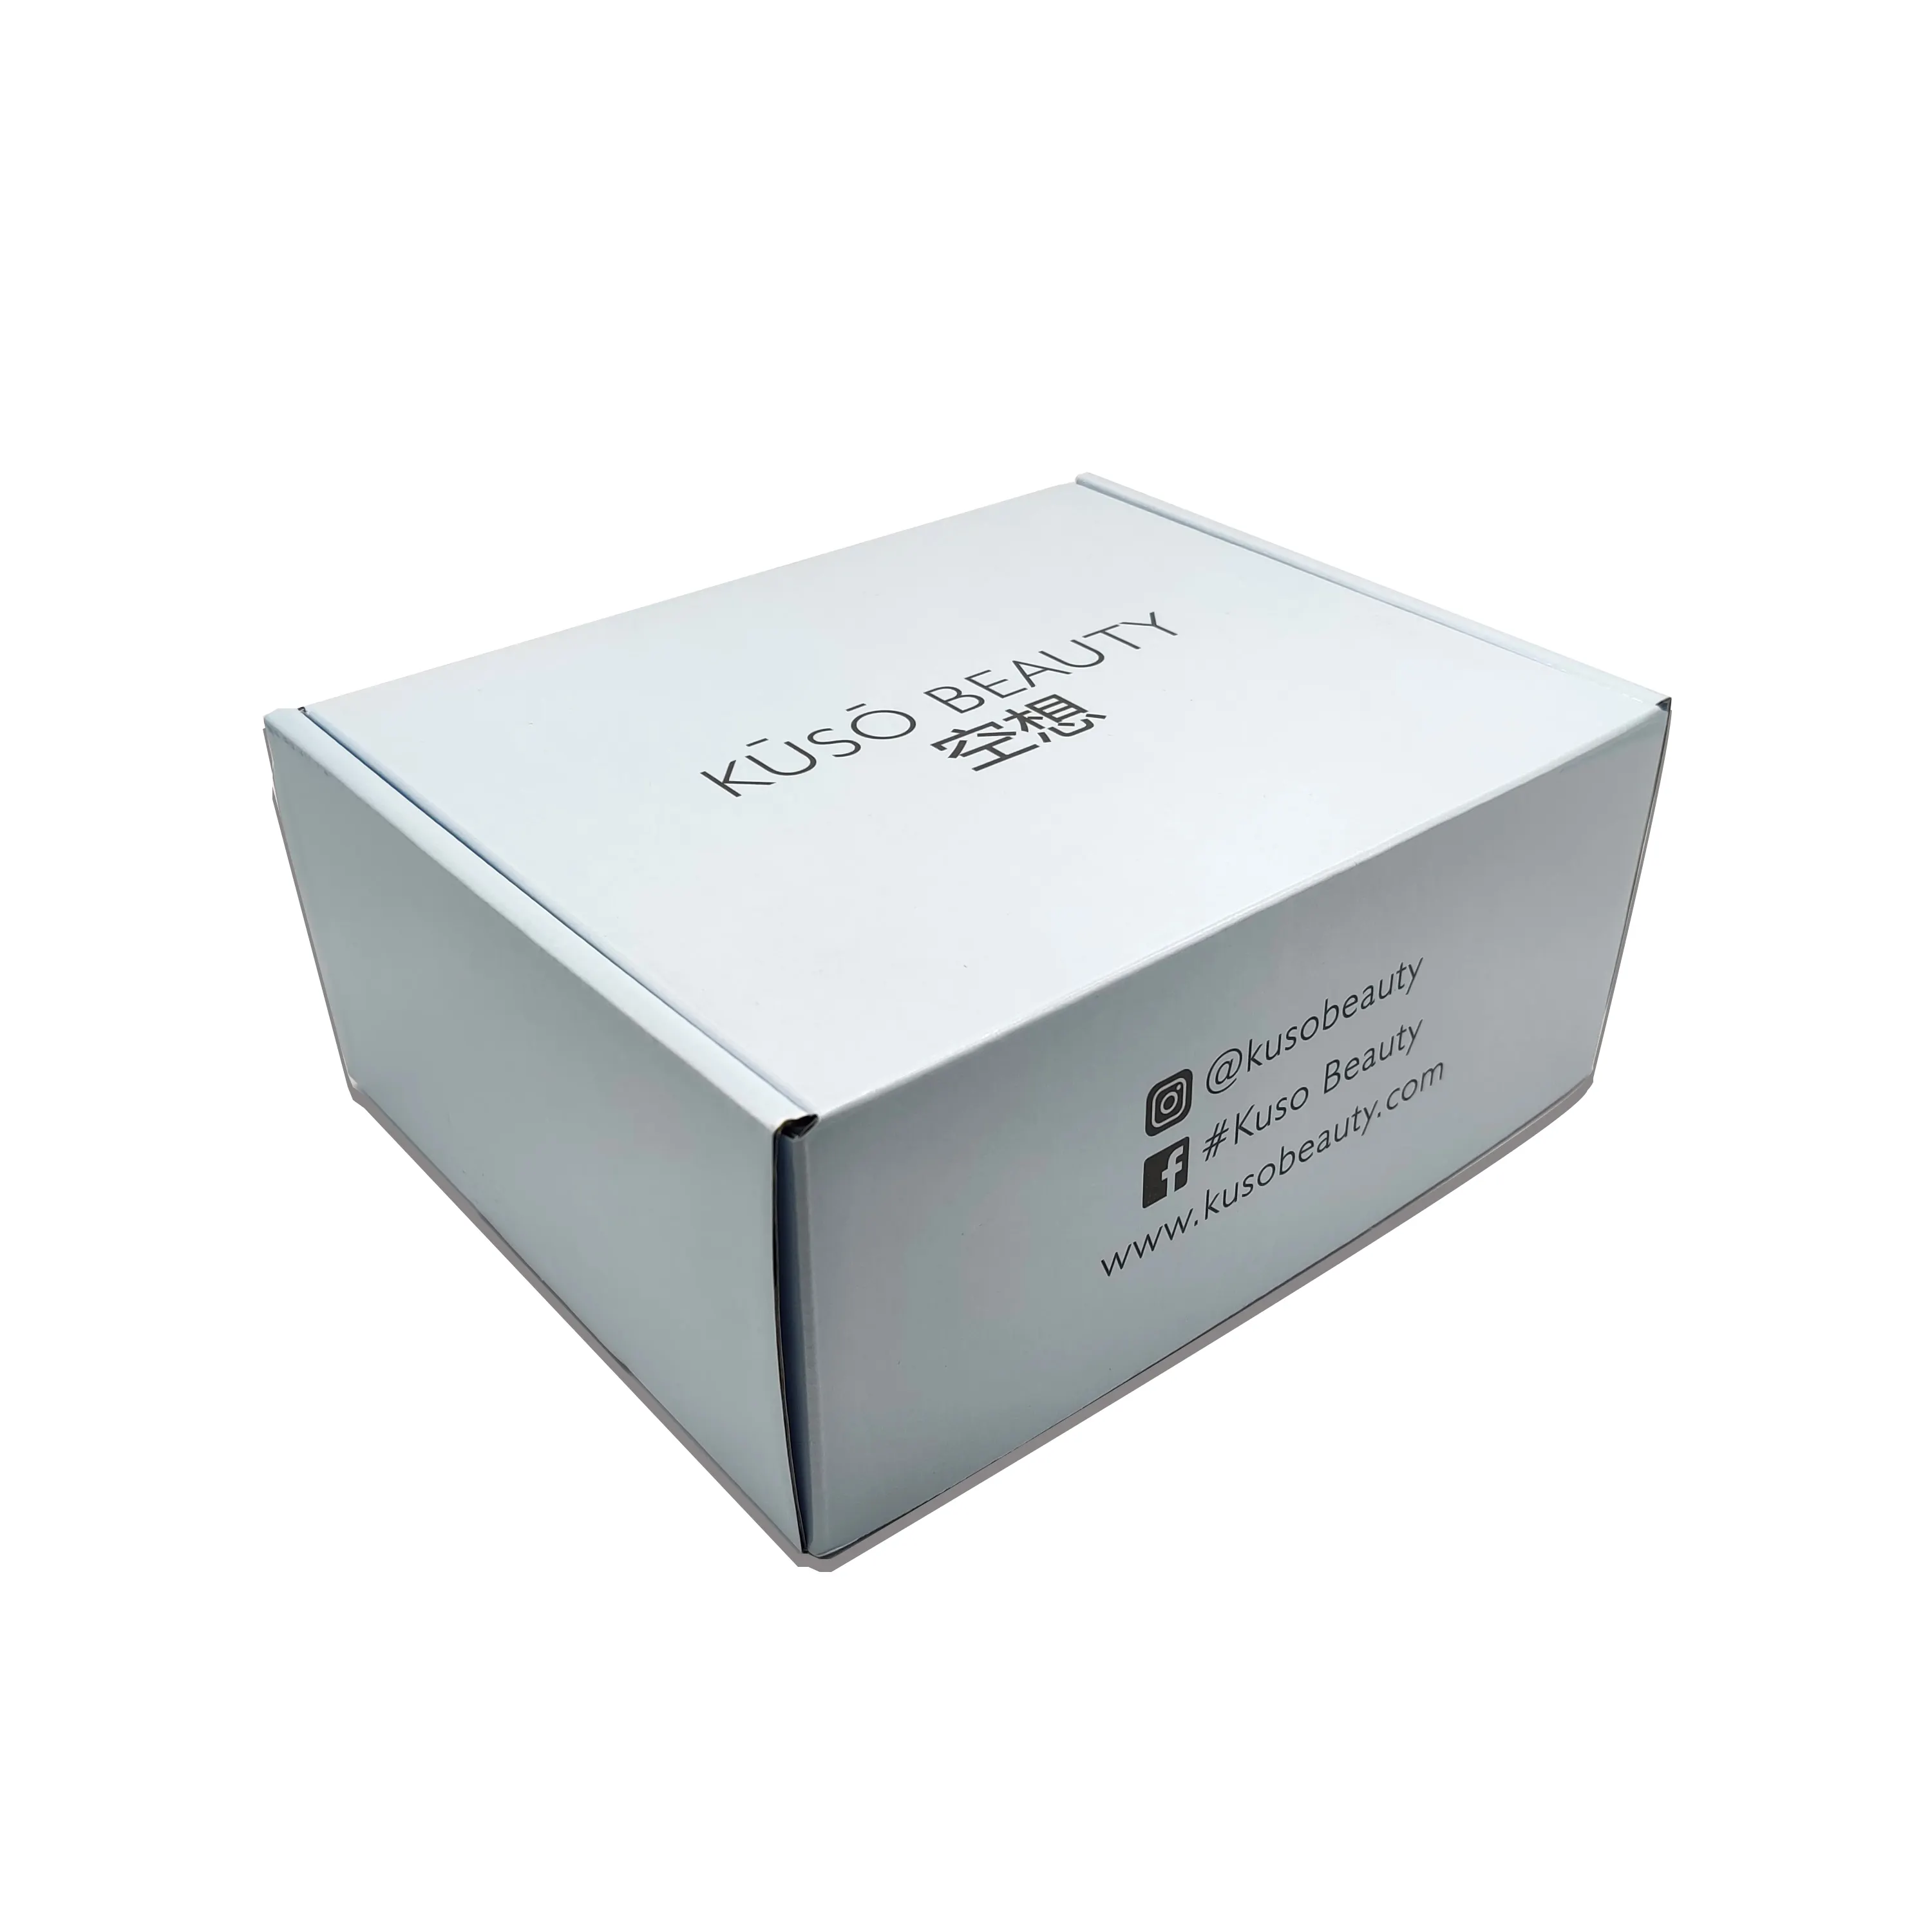 Pre Roll Packaging Parcel Box Boite Cajas Personalizadas Bridesmaid Gift Box Cajas De Regalos Carton Emballage